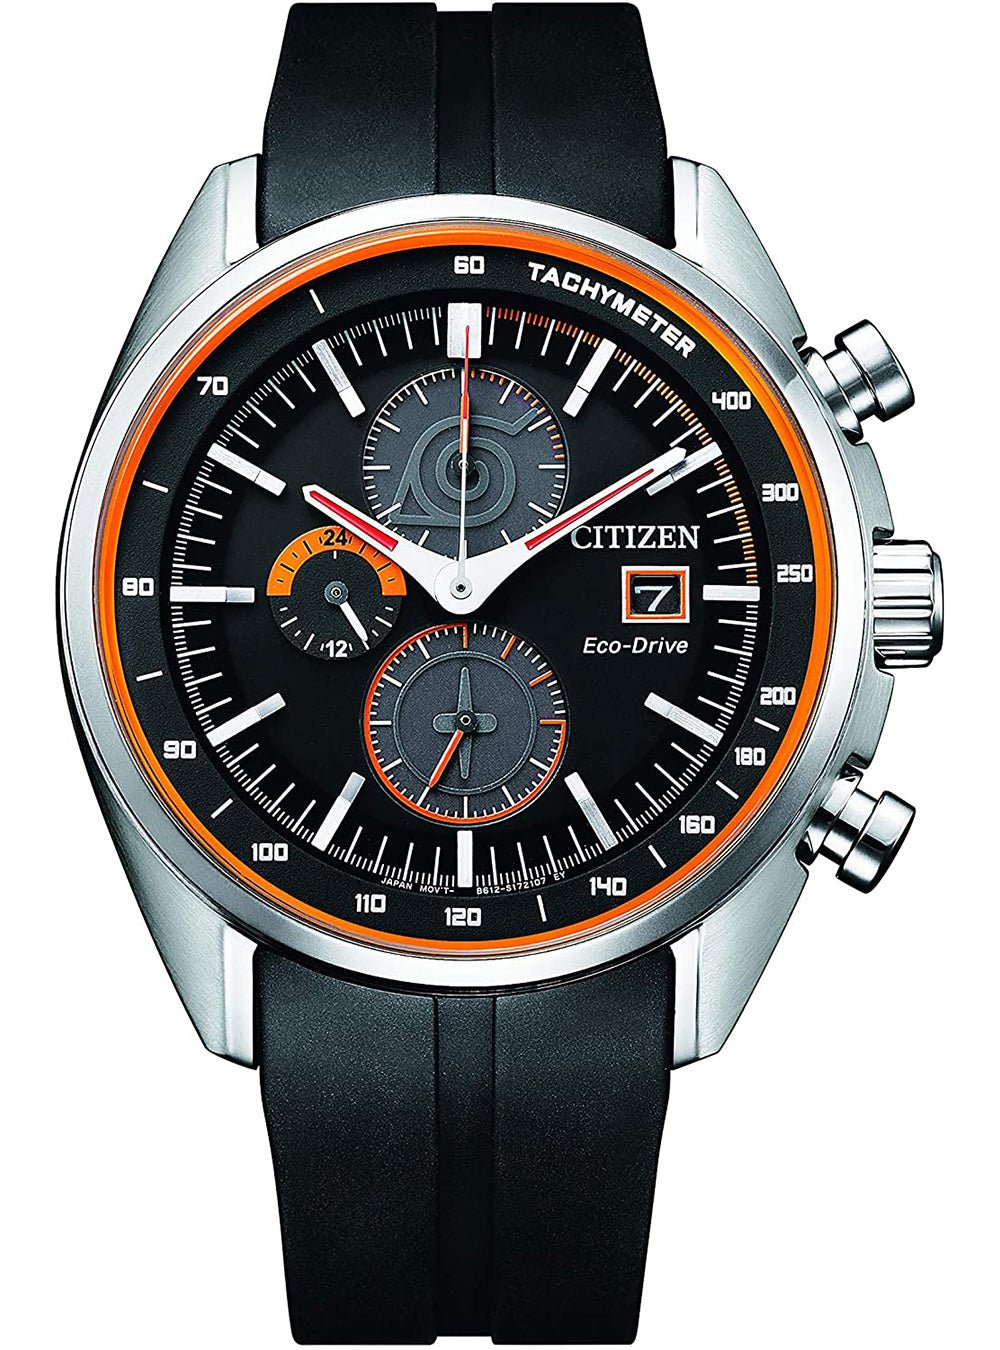 シチズン CITIZEN 腕時計 メンズ CA0591-12E シチズンコレクション エコ・ドライブ NARUTO限定 コラボレーションウォッチ うずまきナルト COLLECTION NARUTO エコ・ドライブ（B612/日本製） ブラックxブラック アナログ表示